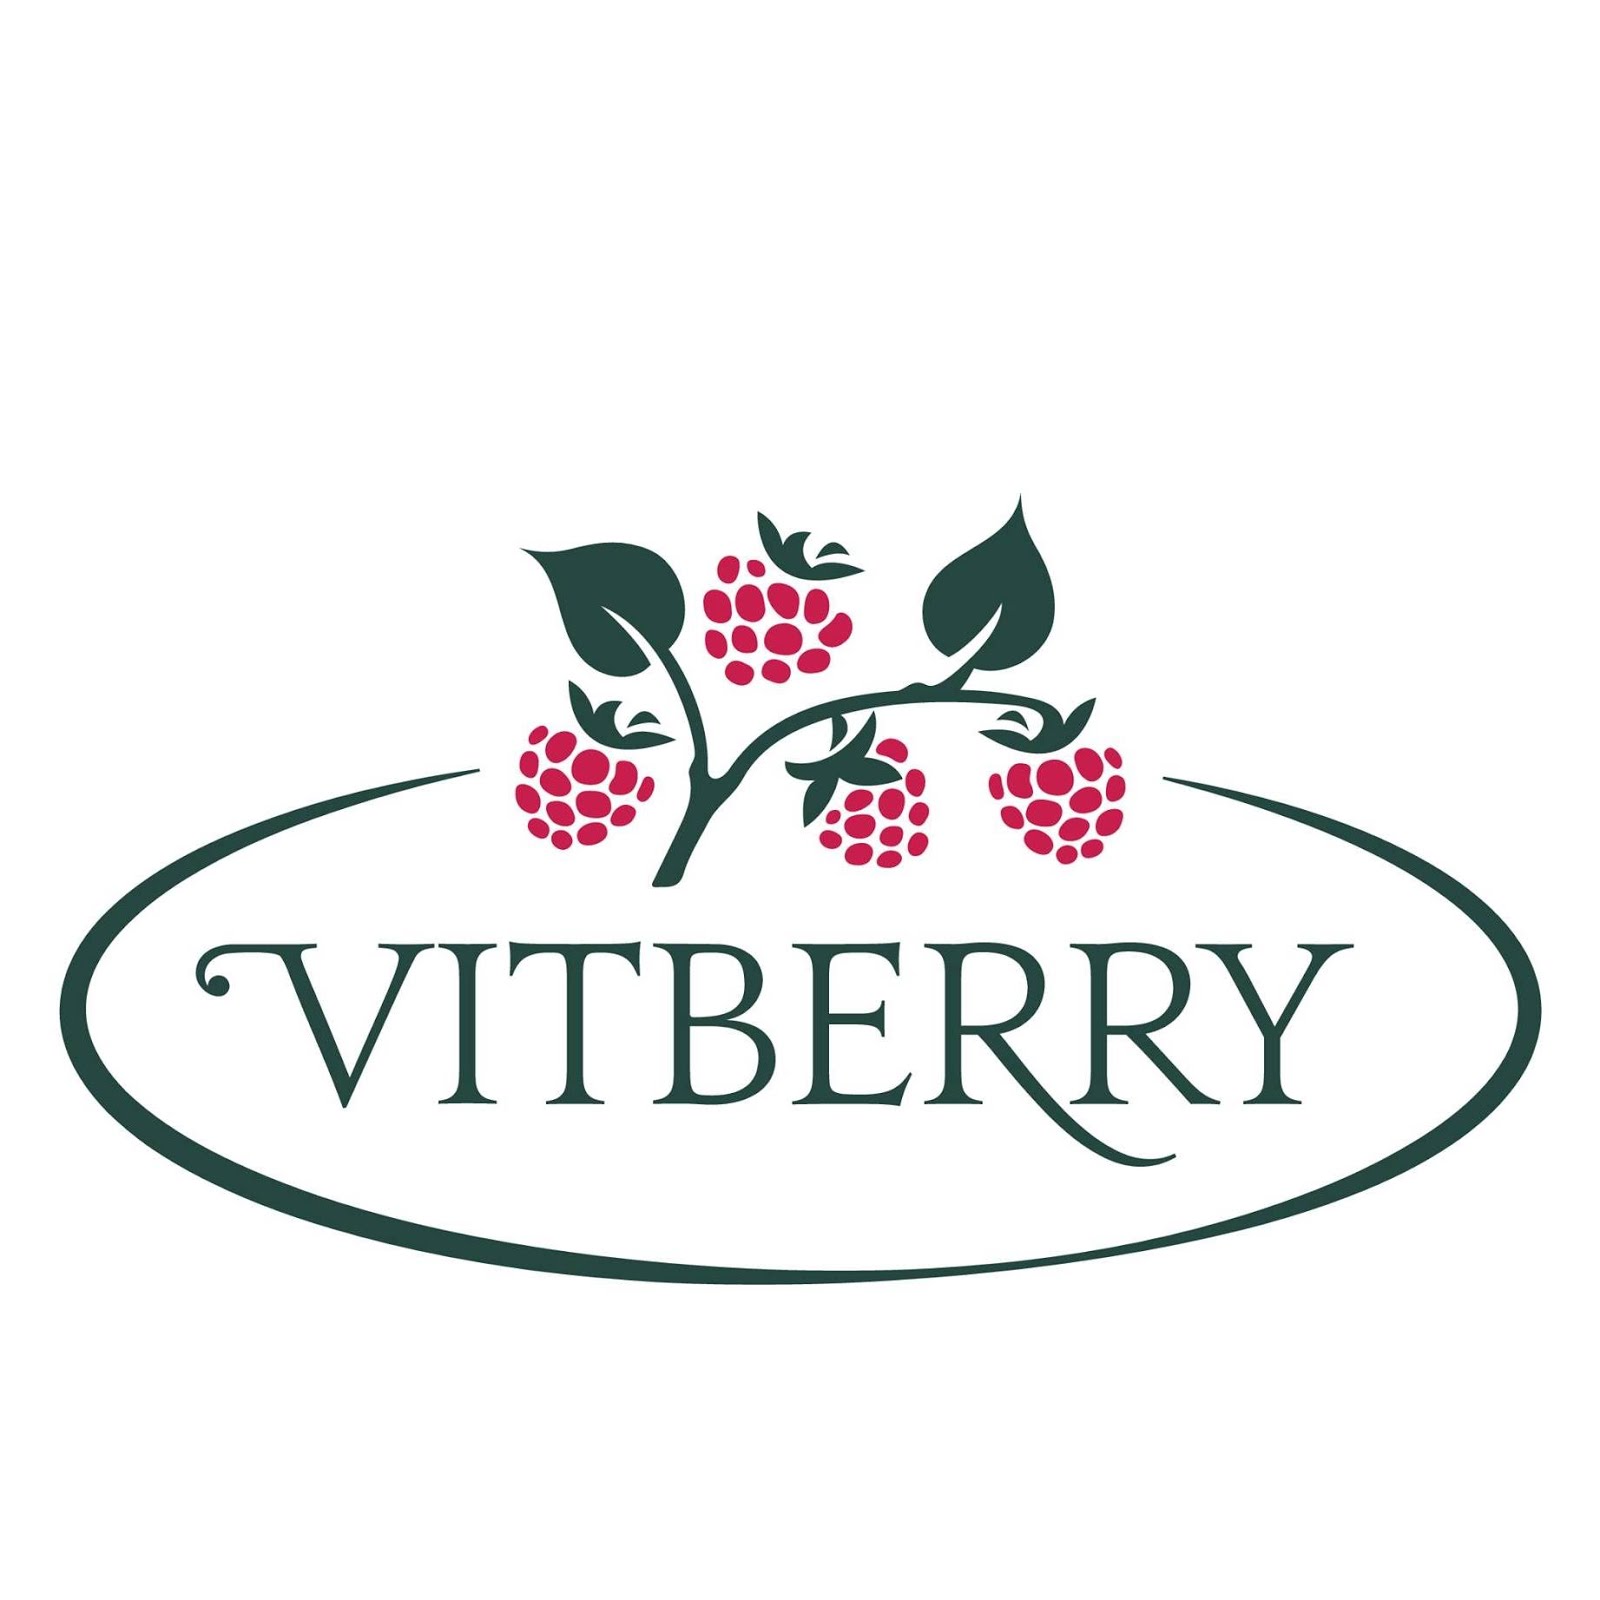 współpracuję z firmą Vitberry od październik 2020r